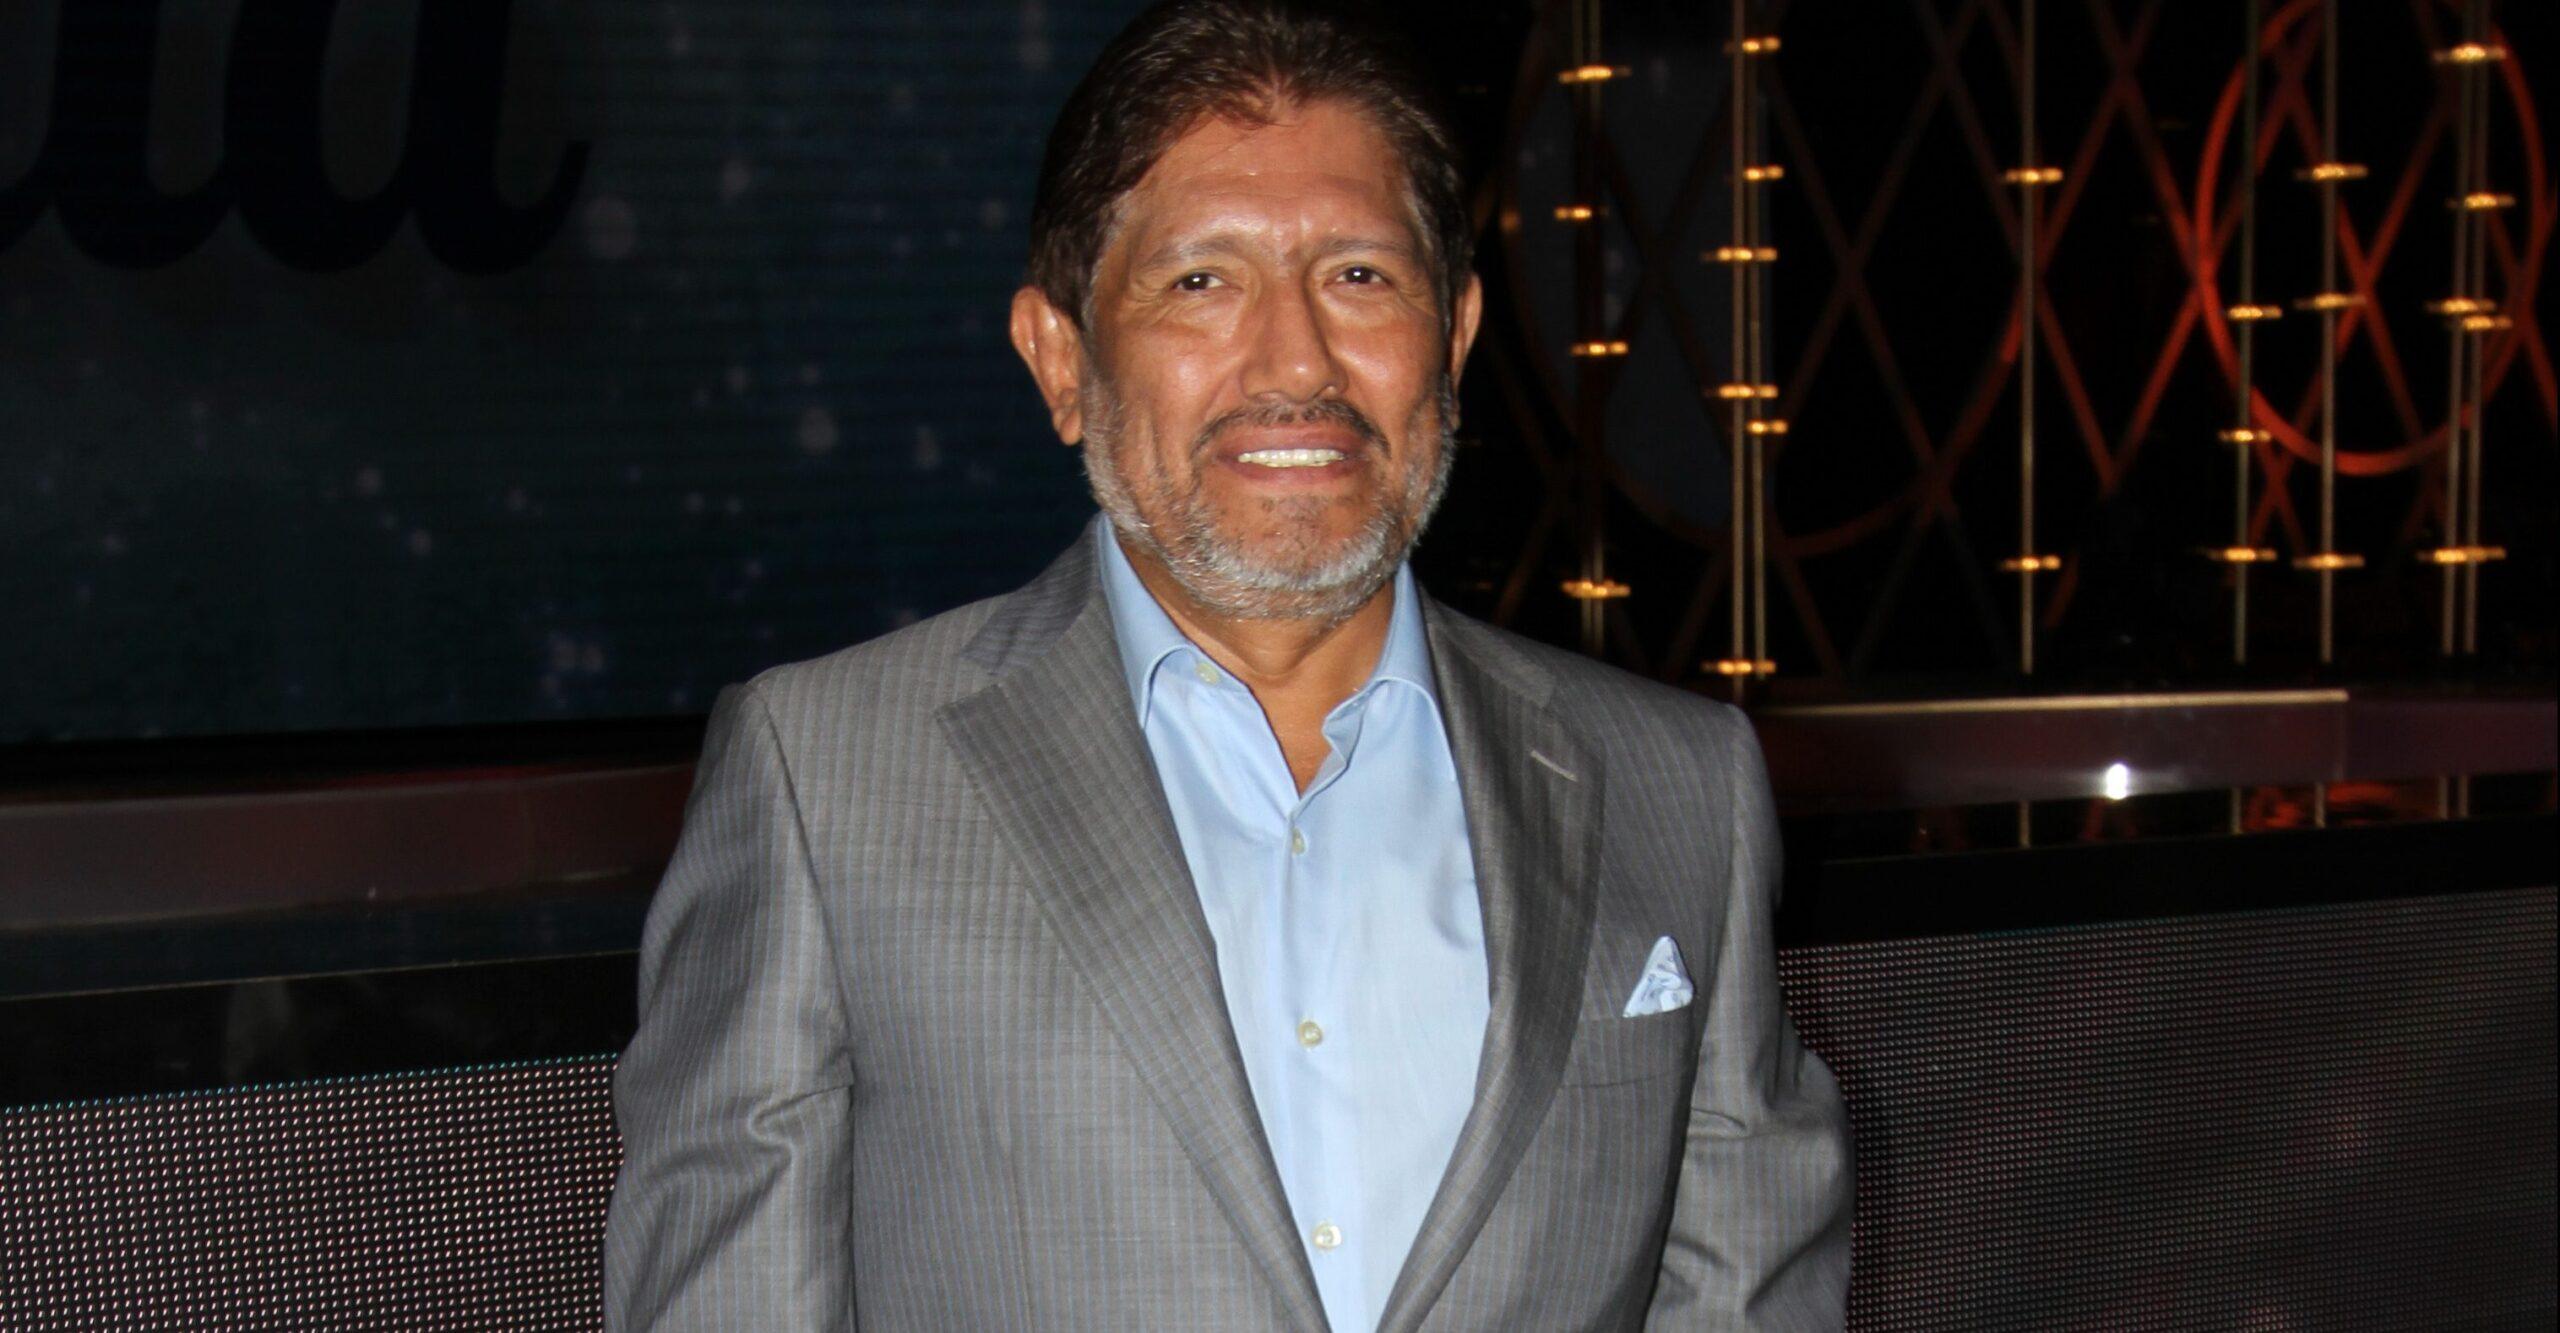 El productor Juan Osorio es golpeado y asaltado dentro de su casa por cuatro sujetos